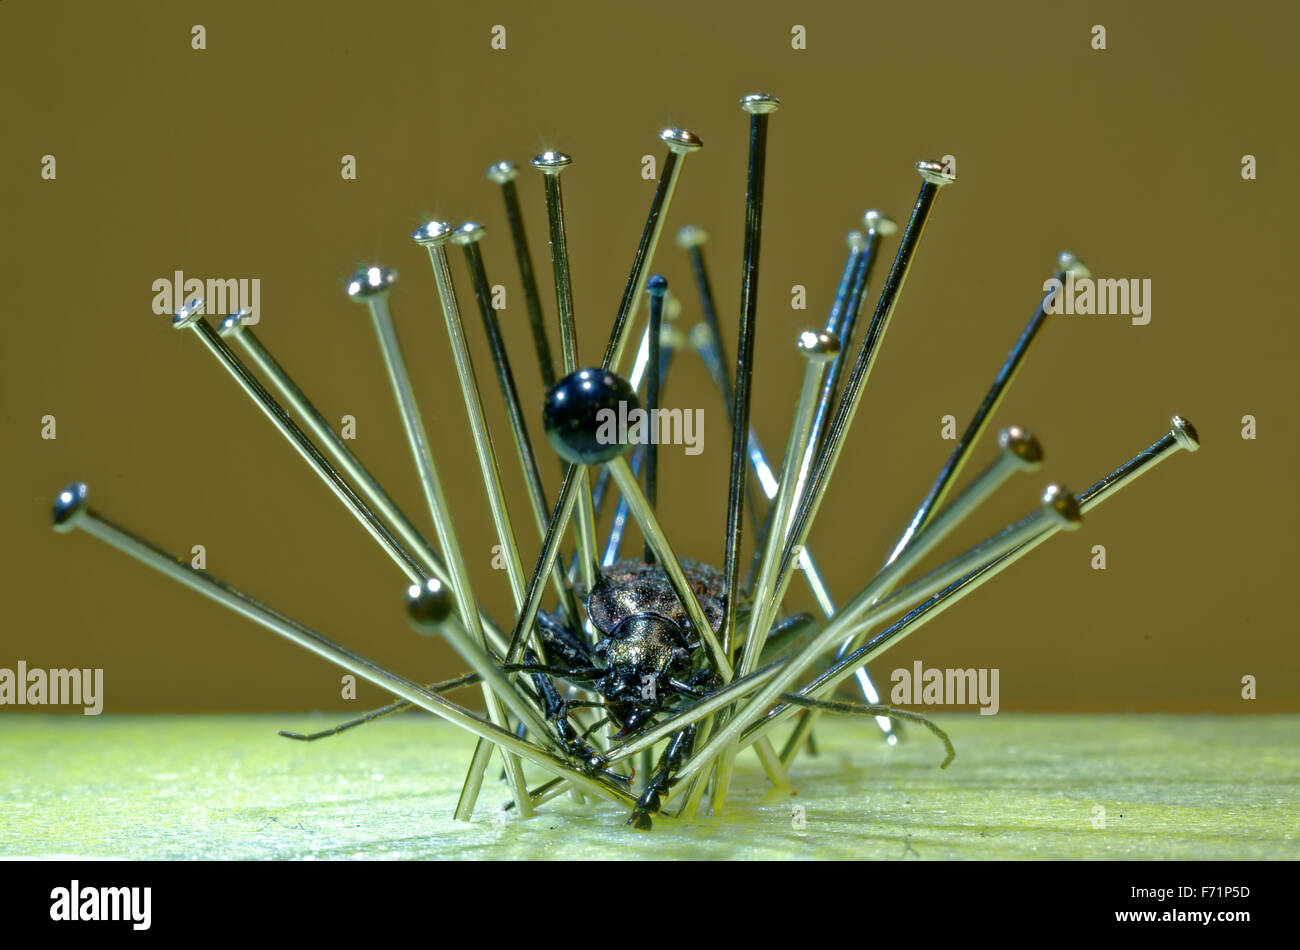 Vorbereitung eines Käfers Carabus naturwissenschaftliche Sammlung. Stockfoto